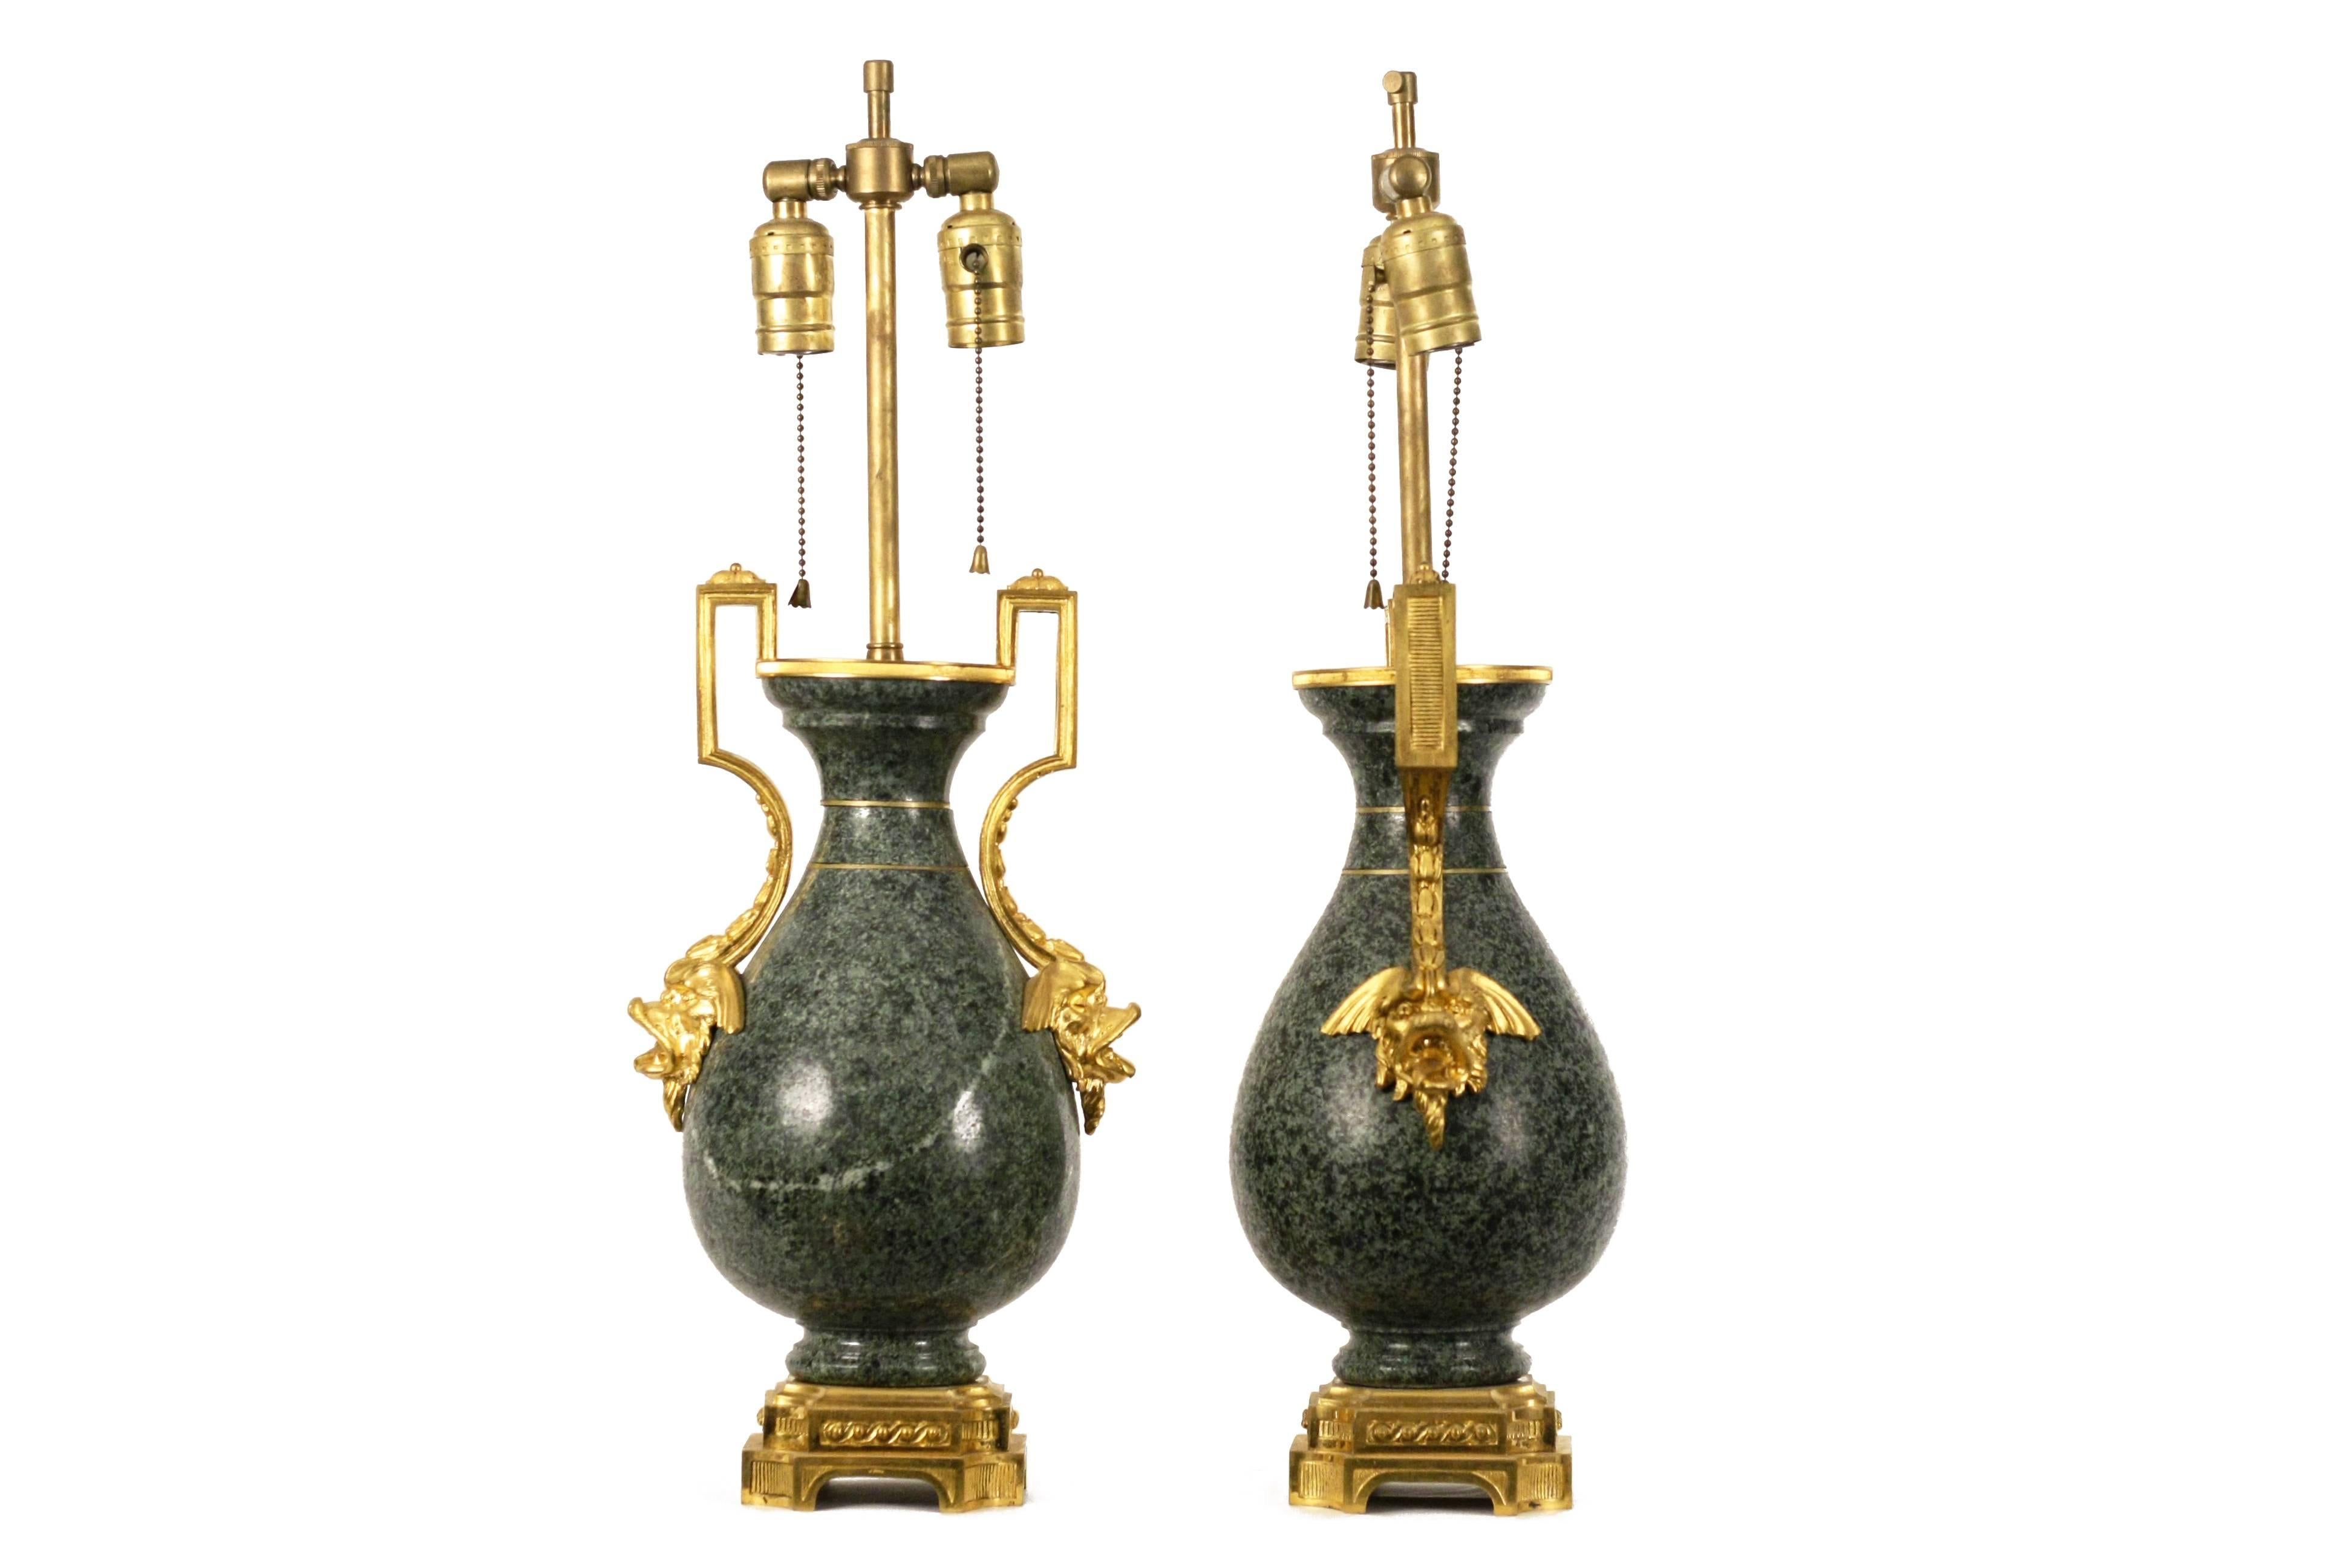 Zwei französische Vasen mit Ormolu-Beschlägen auf Granit, jetzt als Lampen montiert.